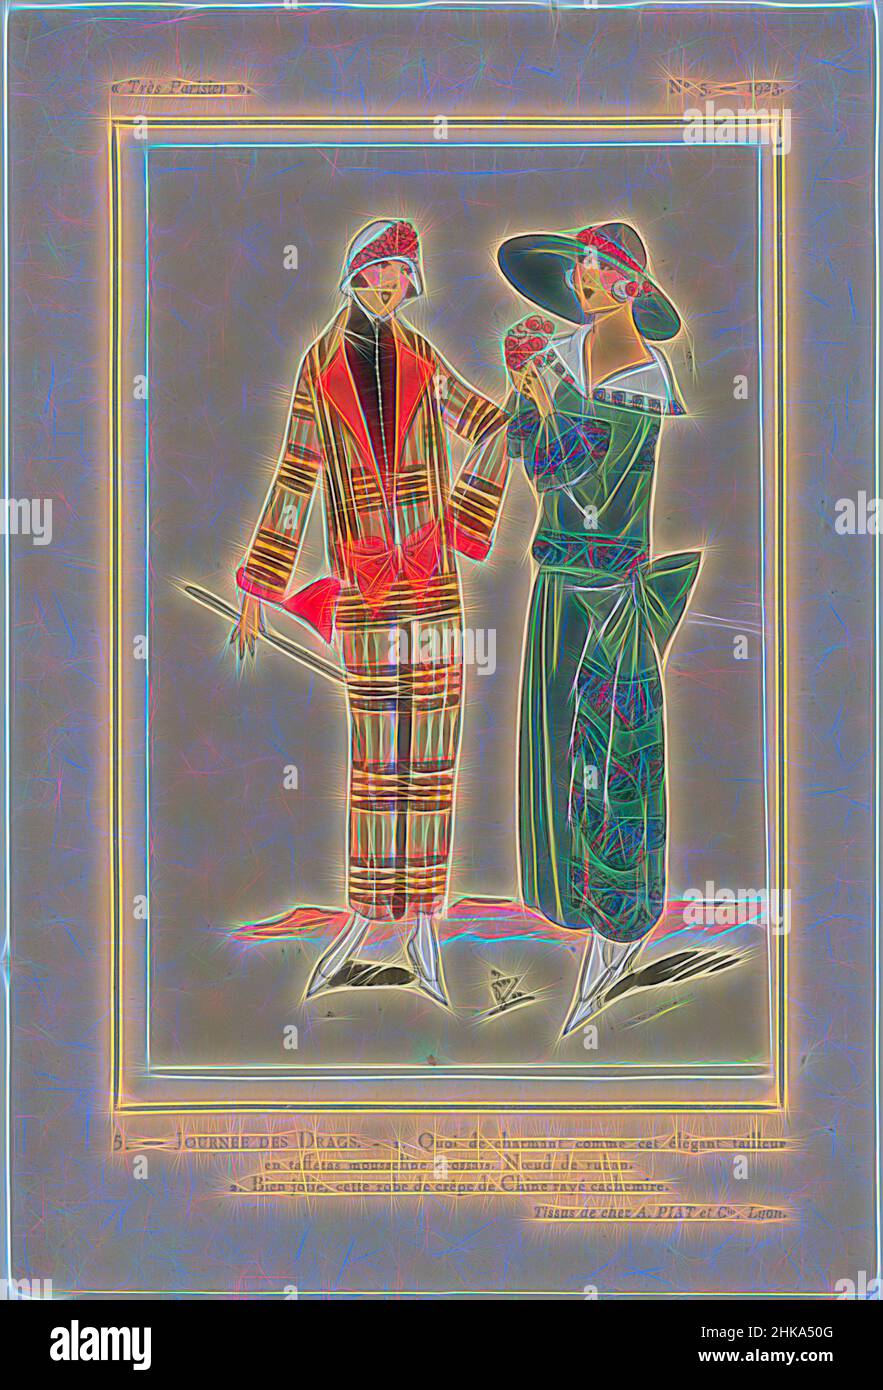 Inspiriert von Très Parisien, 1923, Nr. 5: 5.- JOURNÉE DES DRAGS..., 1. Tailleur (Mantelanzug) aus kariertem „Taft-Musselin“. Schleife aus Band. 2. Kleid aus Crepe de Chine gestreift mit Kaschmir. Zubehör: cloche (Topfhut), Hut mit breiter Krempe, Gehstock(?), Pumps. Print aus der Mode, Reimagined by Artotop. Klassische Kunst neu erfunden mit einem modernen Twist. Design von warmen fröhlichen Leuchten der Helligkeit und Lichtstrahl Strahlkraft. Fotografie inspiriert von Surrealismus und Futurismus, umarmt dynamische Energie der modernen Technologie, Bewegung, Geschwindigkeit und Kultur zu revolutionieren Stockfoto